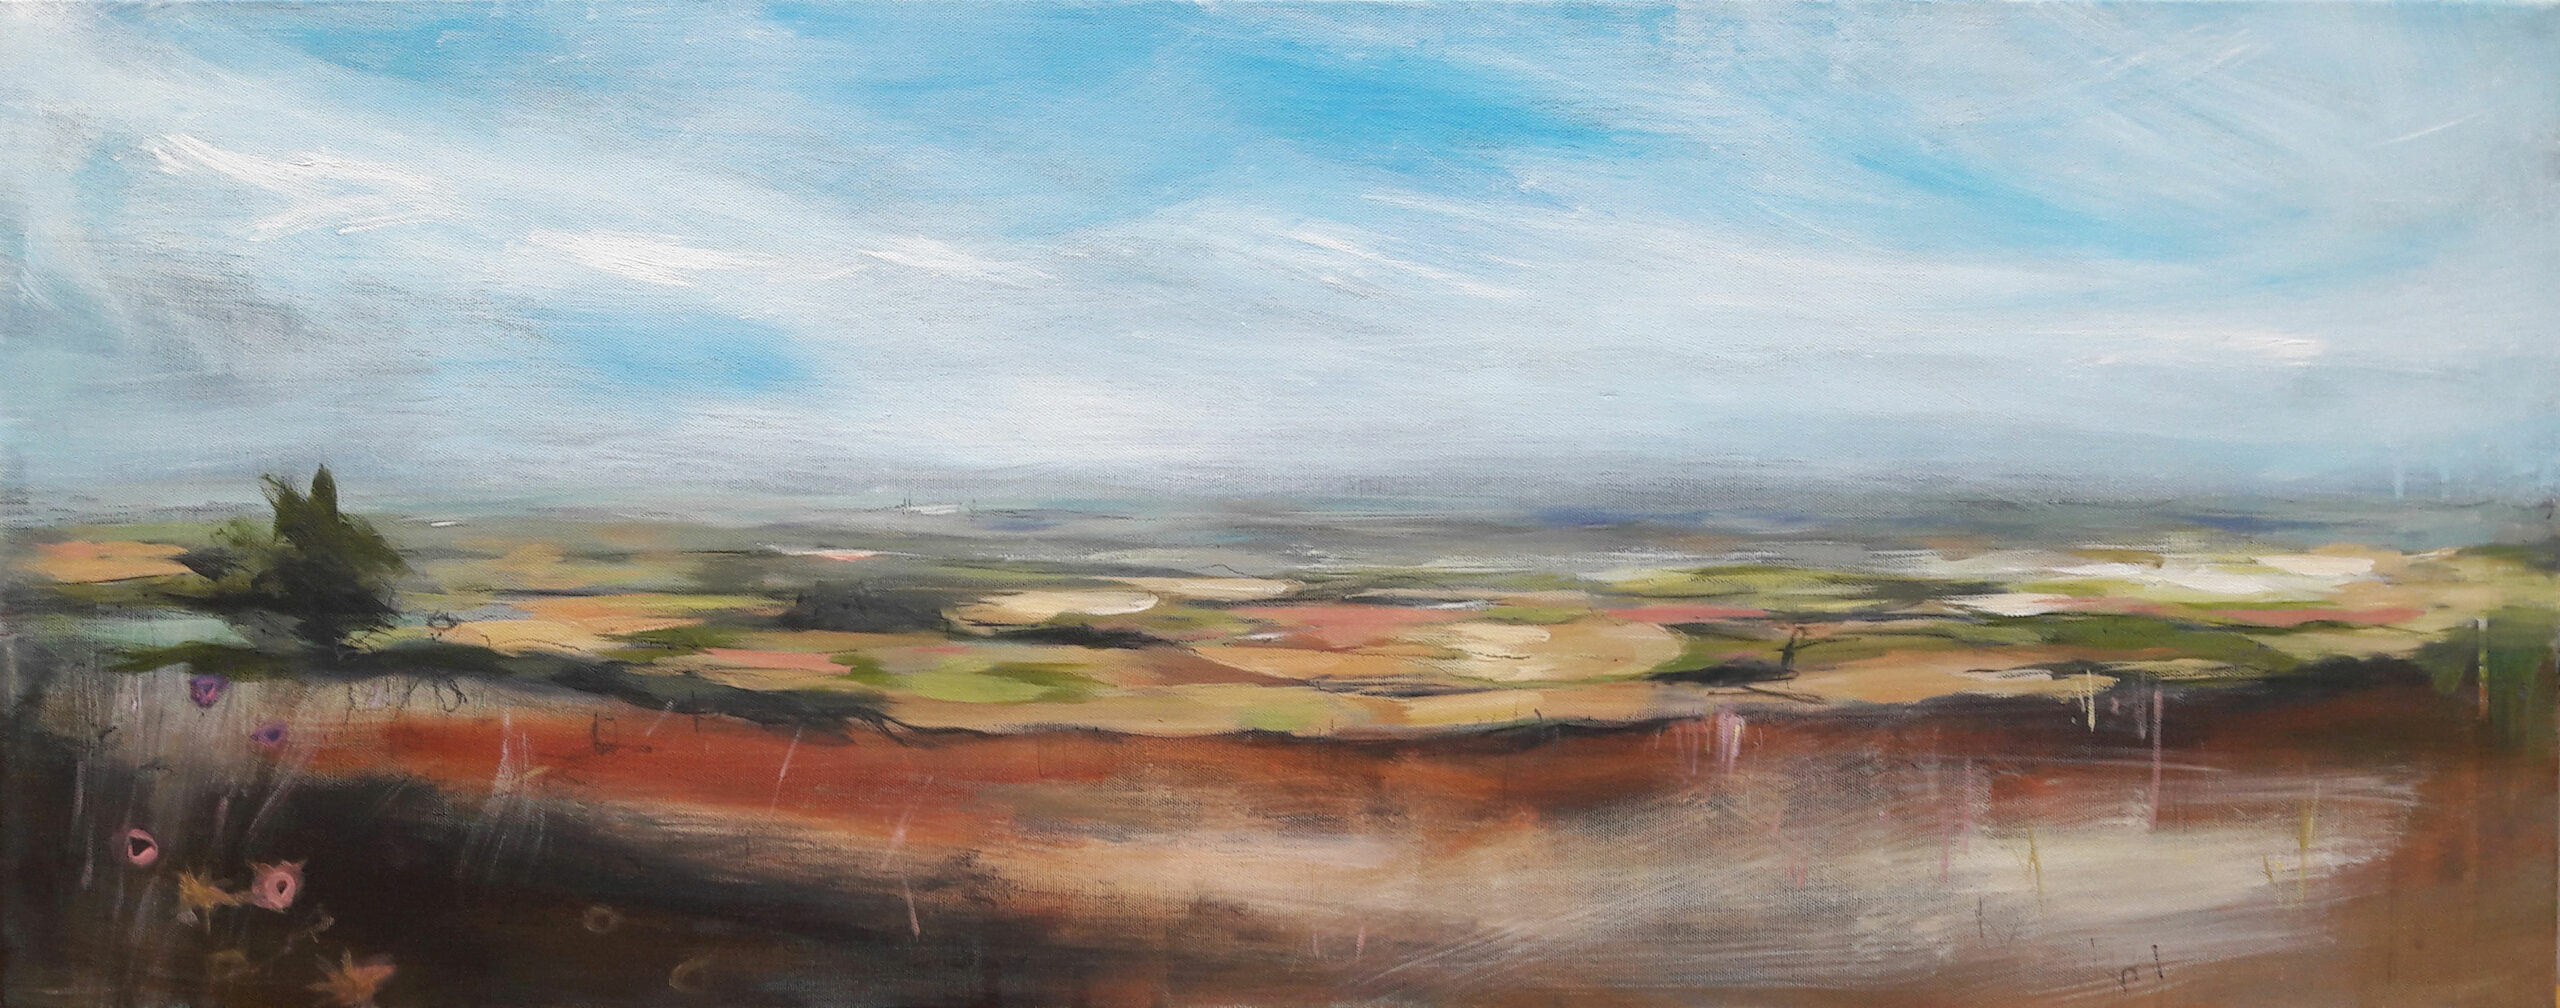 August: Garrowby Hill. Plein air acrylic on canvas